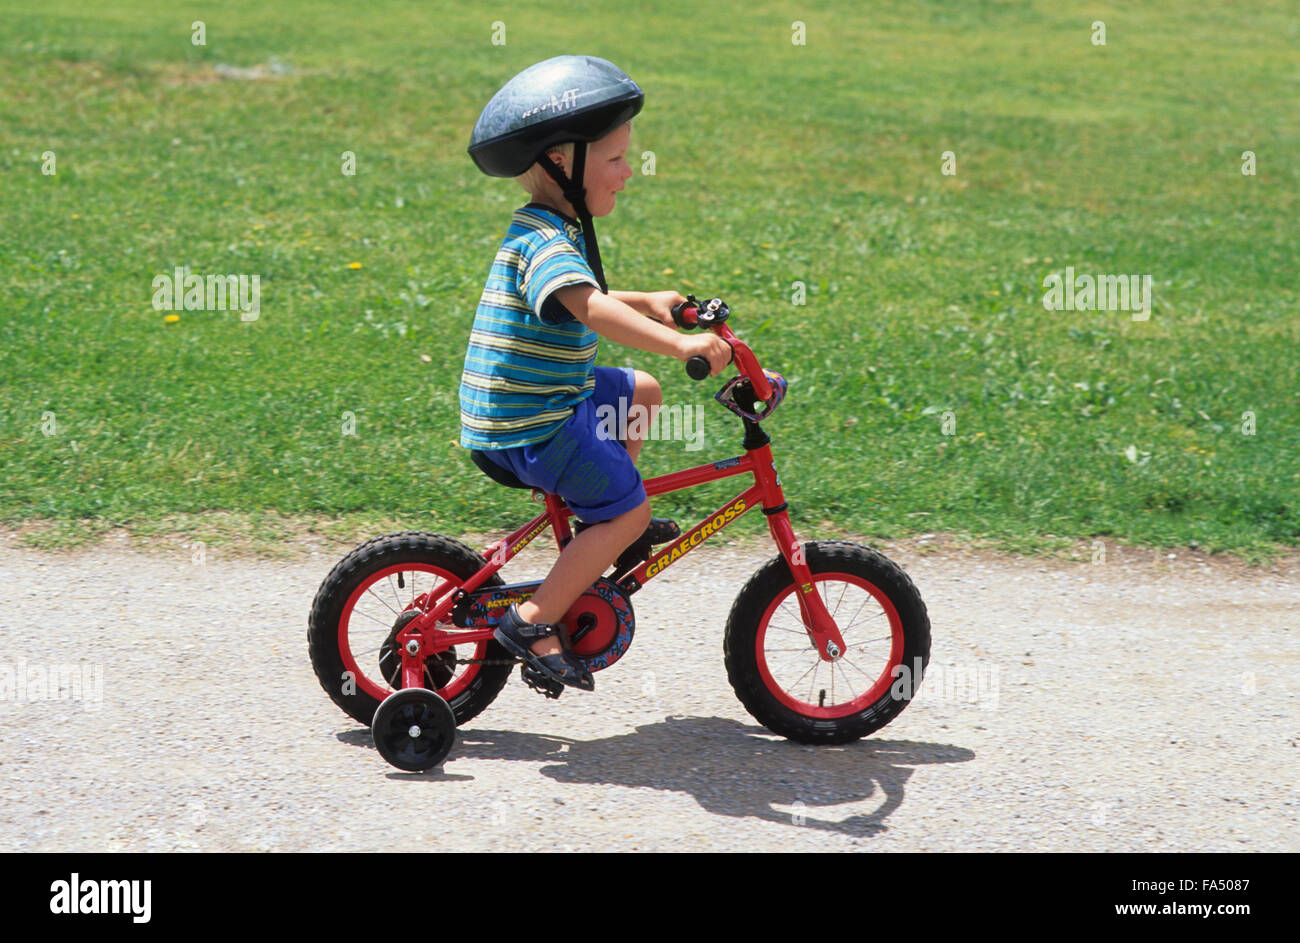 El Hombre Adulto Va En Una Bicicleta De Los Niños Foto de archivo - Imagen  de casco, concepto: 16246376